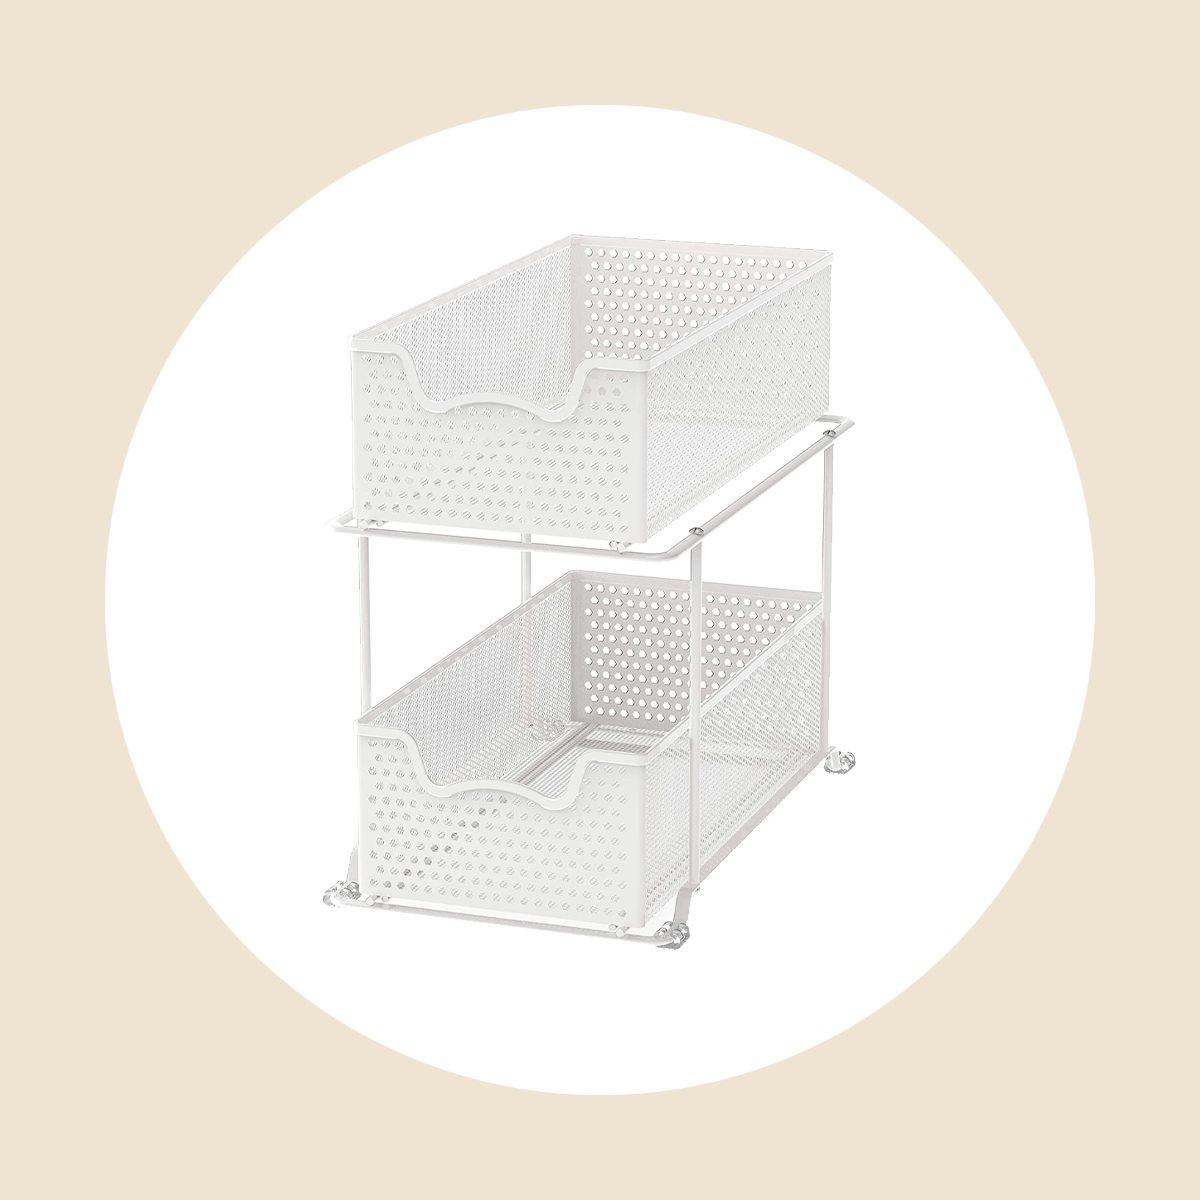 2-Tier Under Sink Storage Sliding Basket Organizer Drawer, White